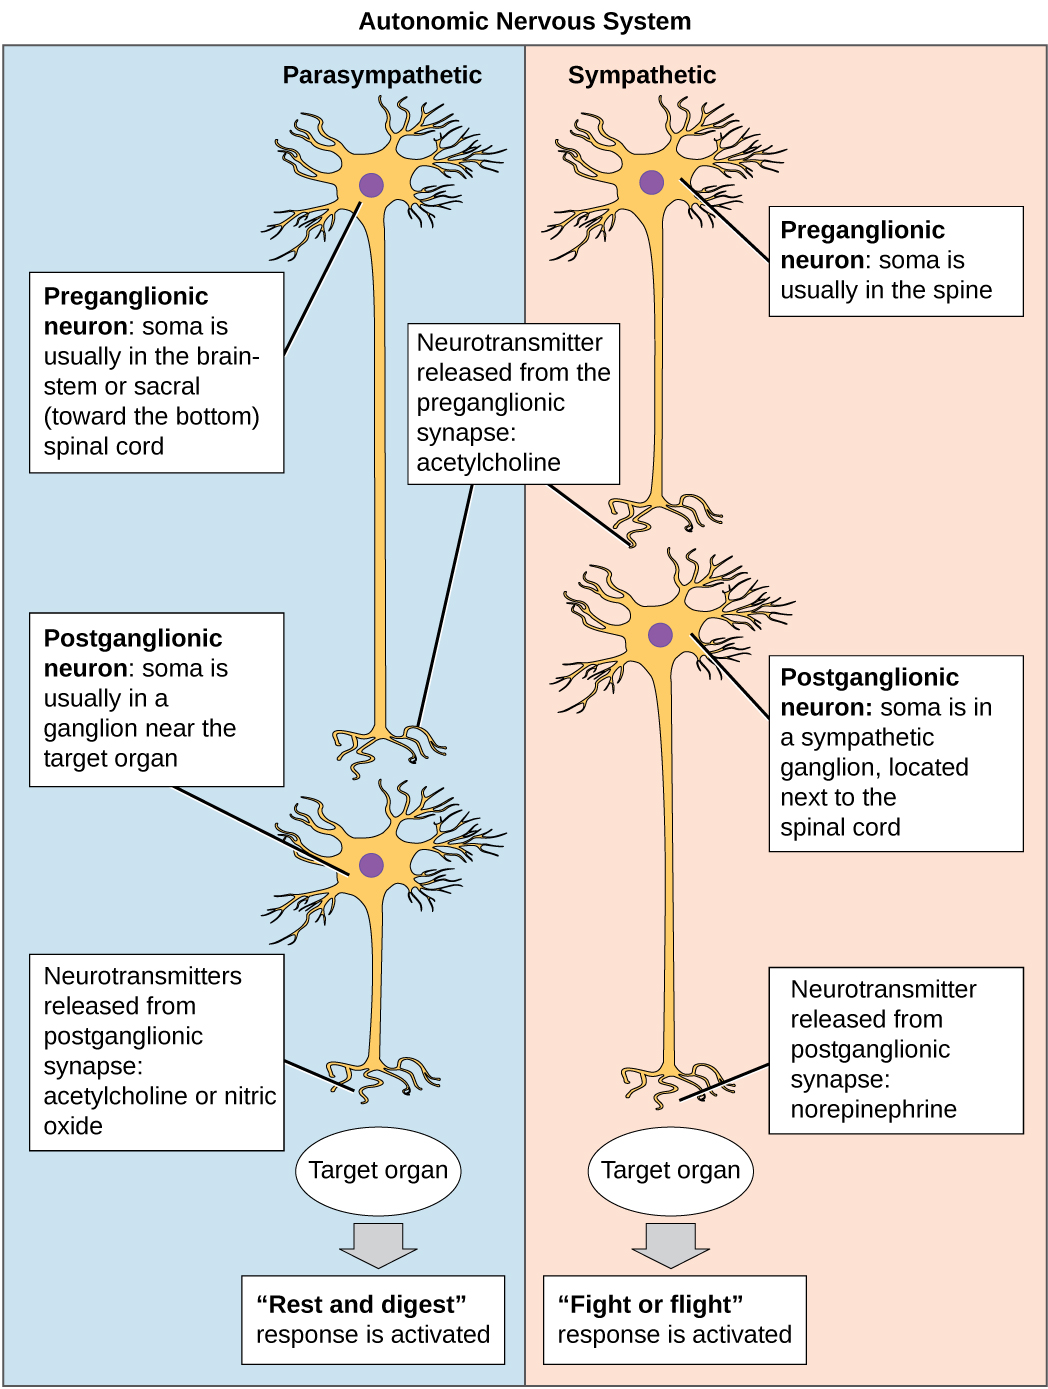 El sistema nervioso autónomo se divide en sistemas simpático y parasimpático. En el sistema simpático, el soma de las neuronas preganglionares generalmente se localiza en la columna mientras que en el sistema parasimpático el soma suele estar en el tronco encefálico o sacro, en la parte inferior de la columna vertebral. En ambos sistemas, la neurona pregangliónica libera el neurotransmisor acetilcolina en la sinapsis. Las neuronas postganglionares del sistema simpático tienen somas en un ganglio simpático, ubicado junto a la médula espinal. Las neuronas postganglionares del sistema parasimpático tienen somas en los ganglios cercanos al órgano diana. Las neuronas postganglionares del sistema simpático liberan norepinefrina en la sinapsis, mientras que las neuronas postganglionares del sistema parasimpático liberan acetilcolina u óxido nítrico.